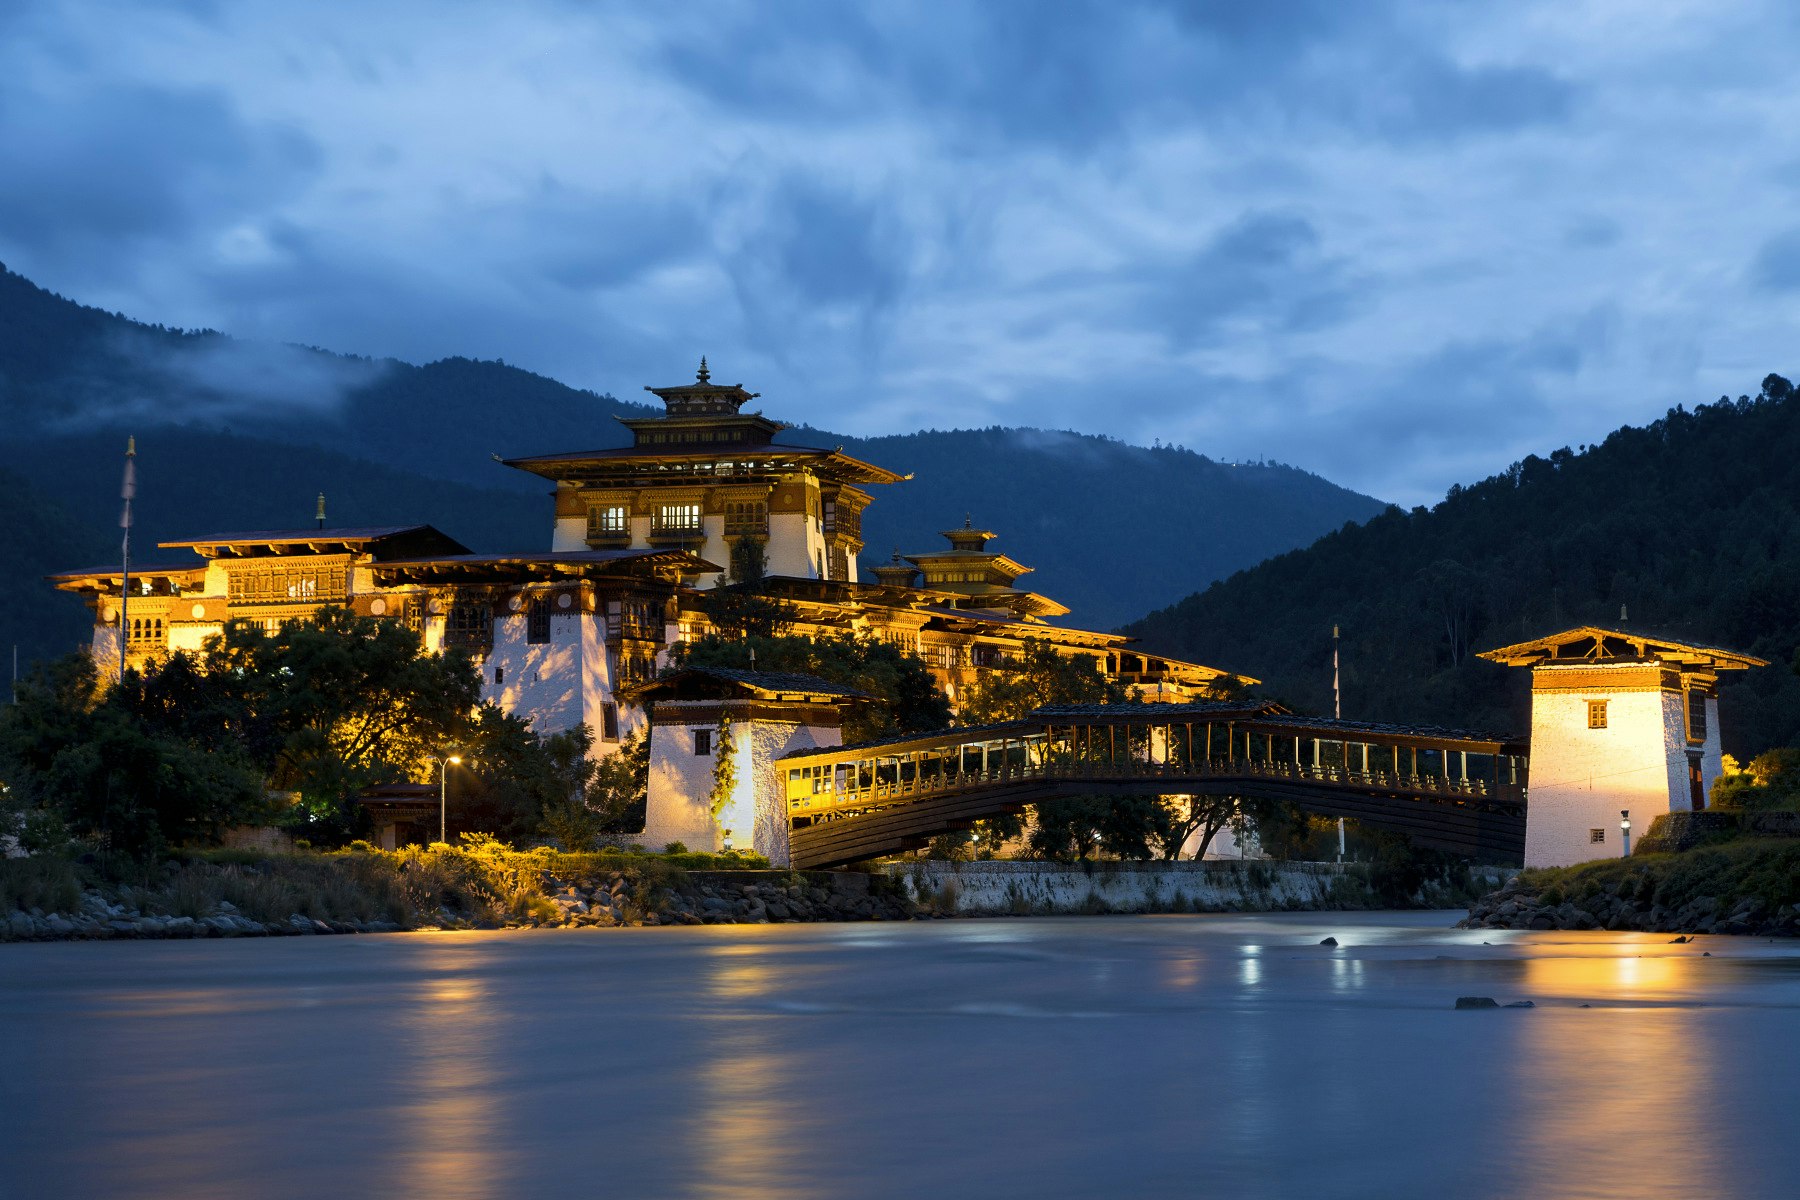 Travel News - Views of the Dzong in Phunaka, Bhutan